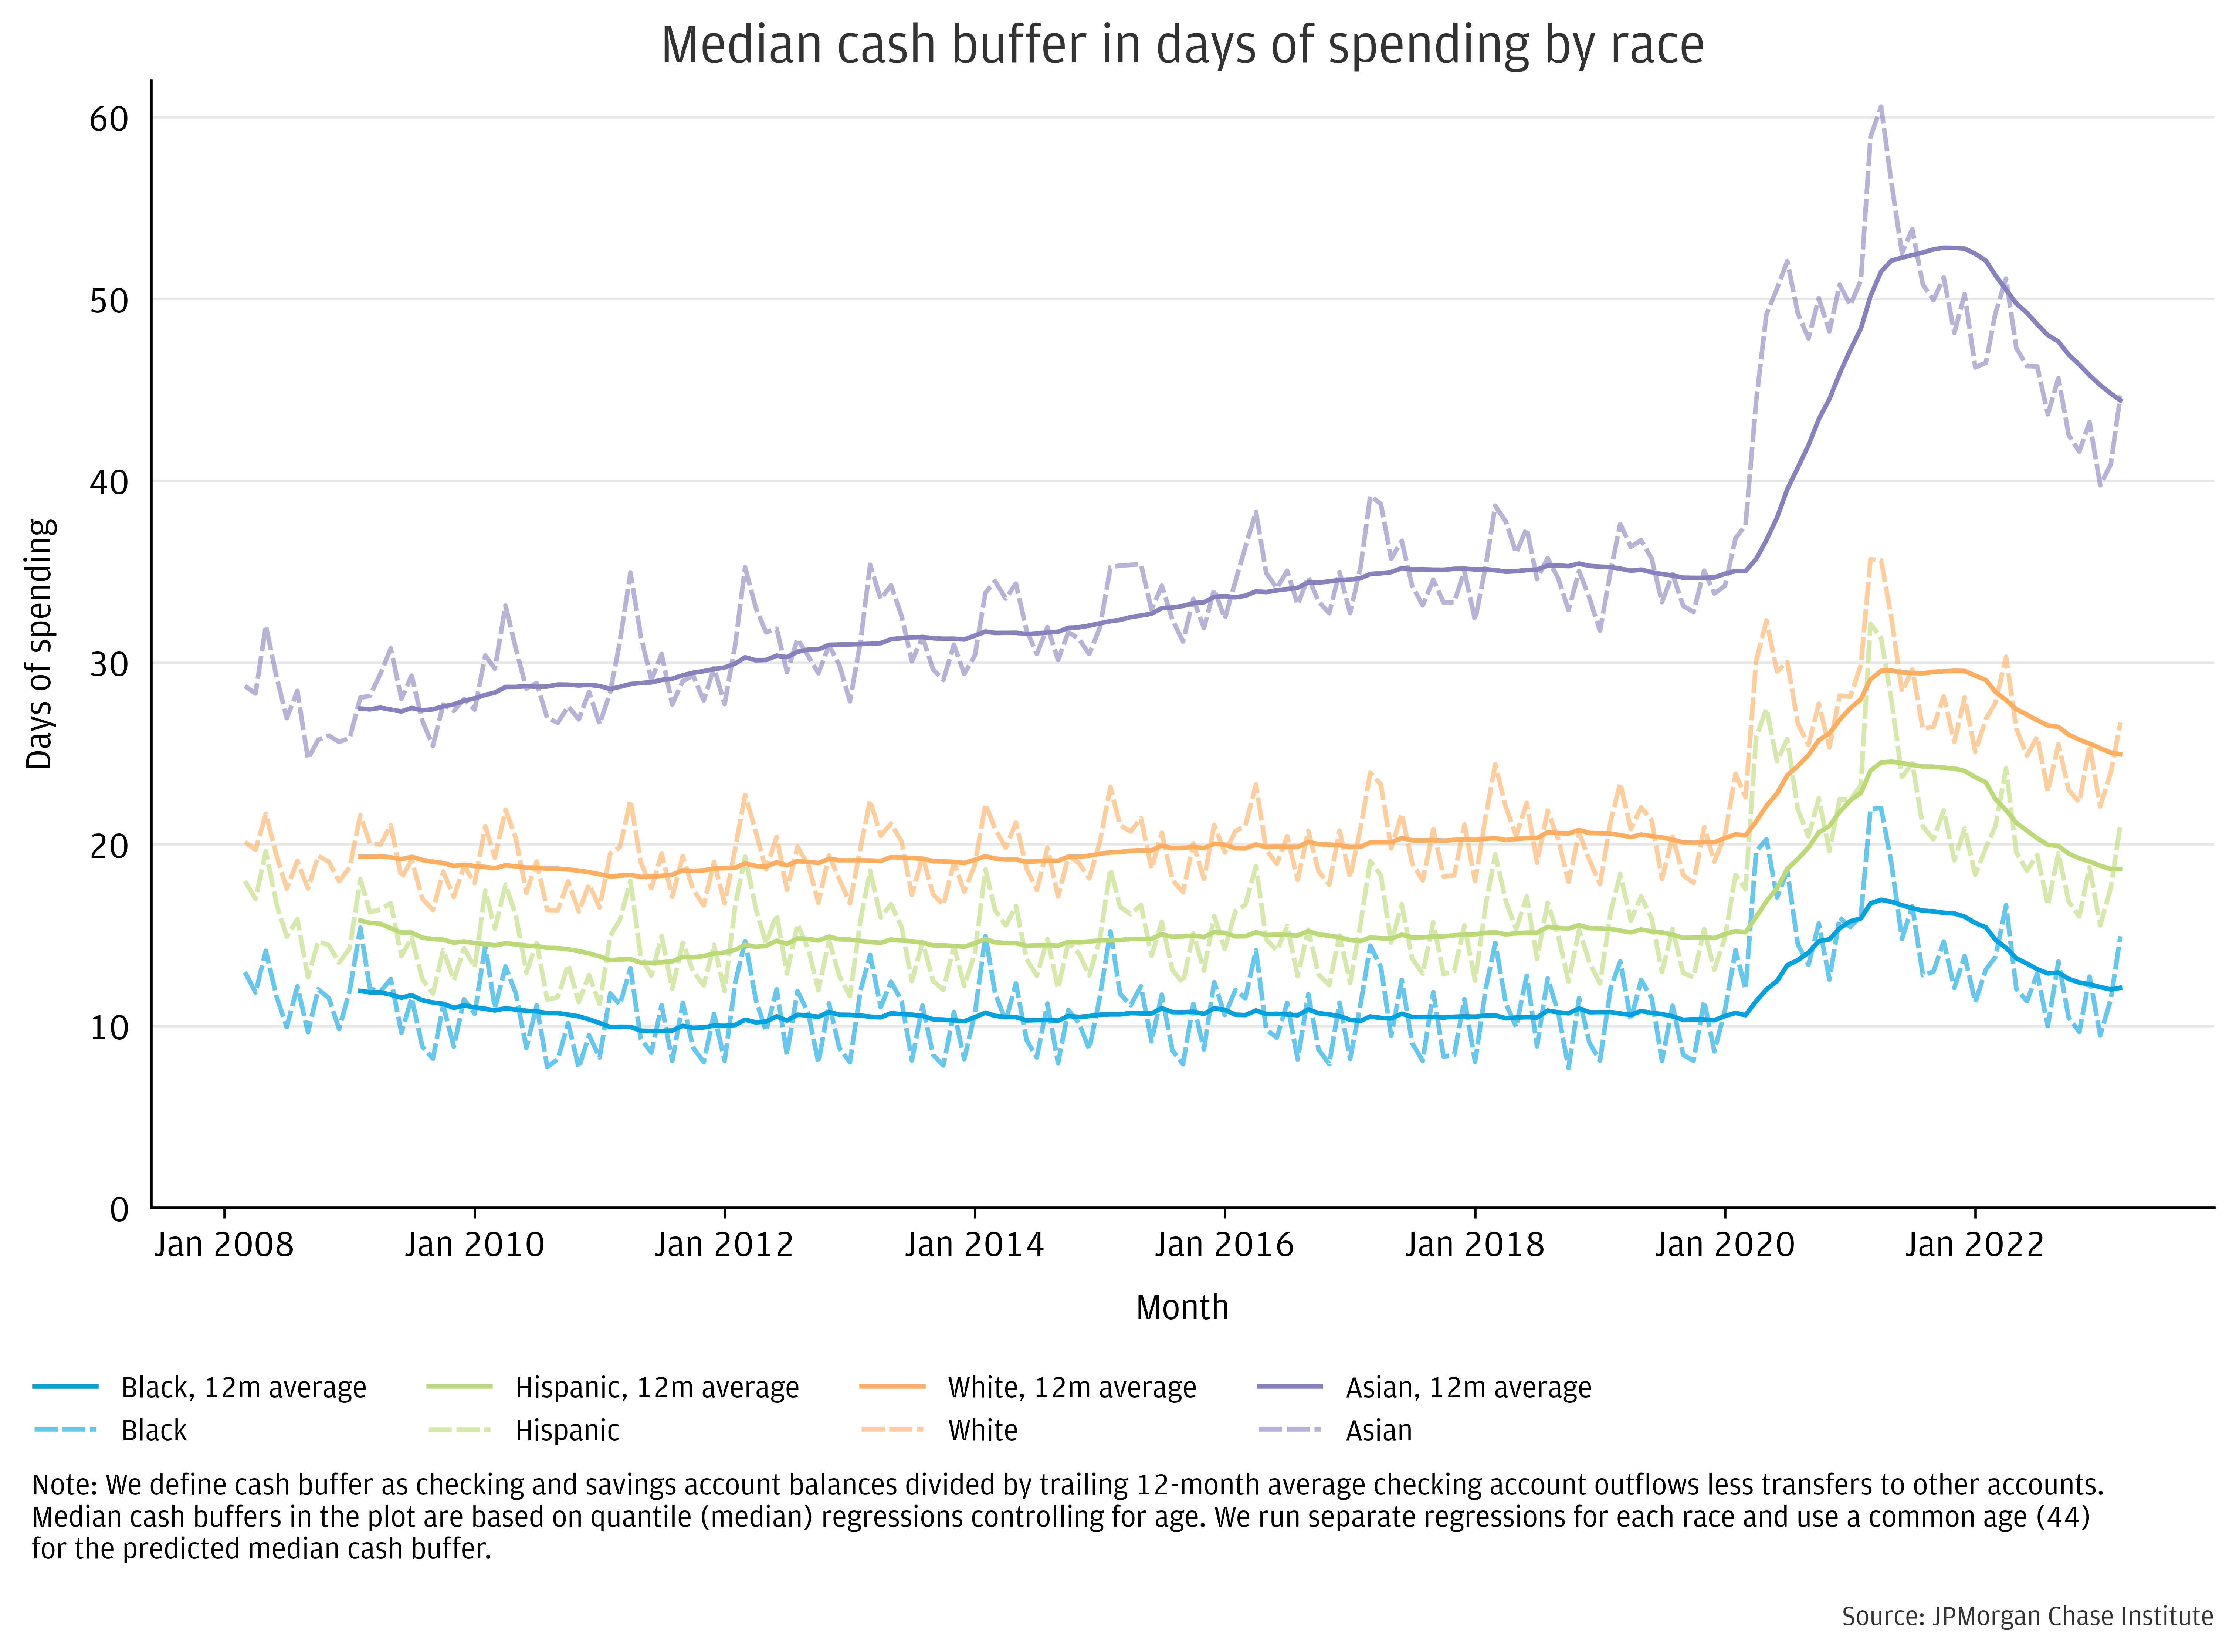 Median Cash Buffer in Days of Spending by Race